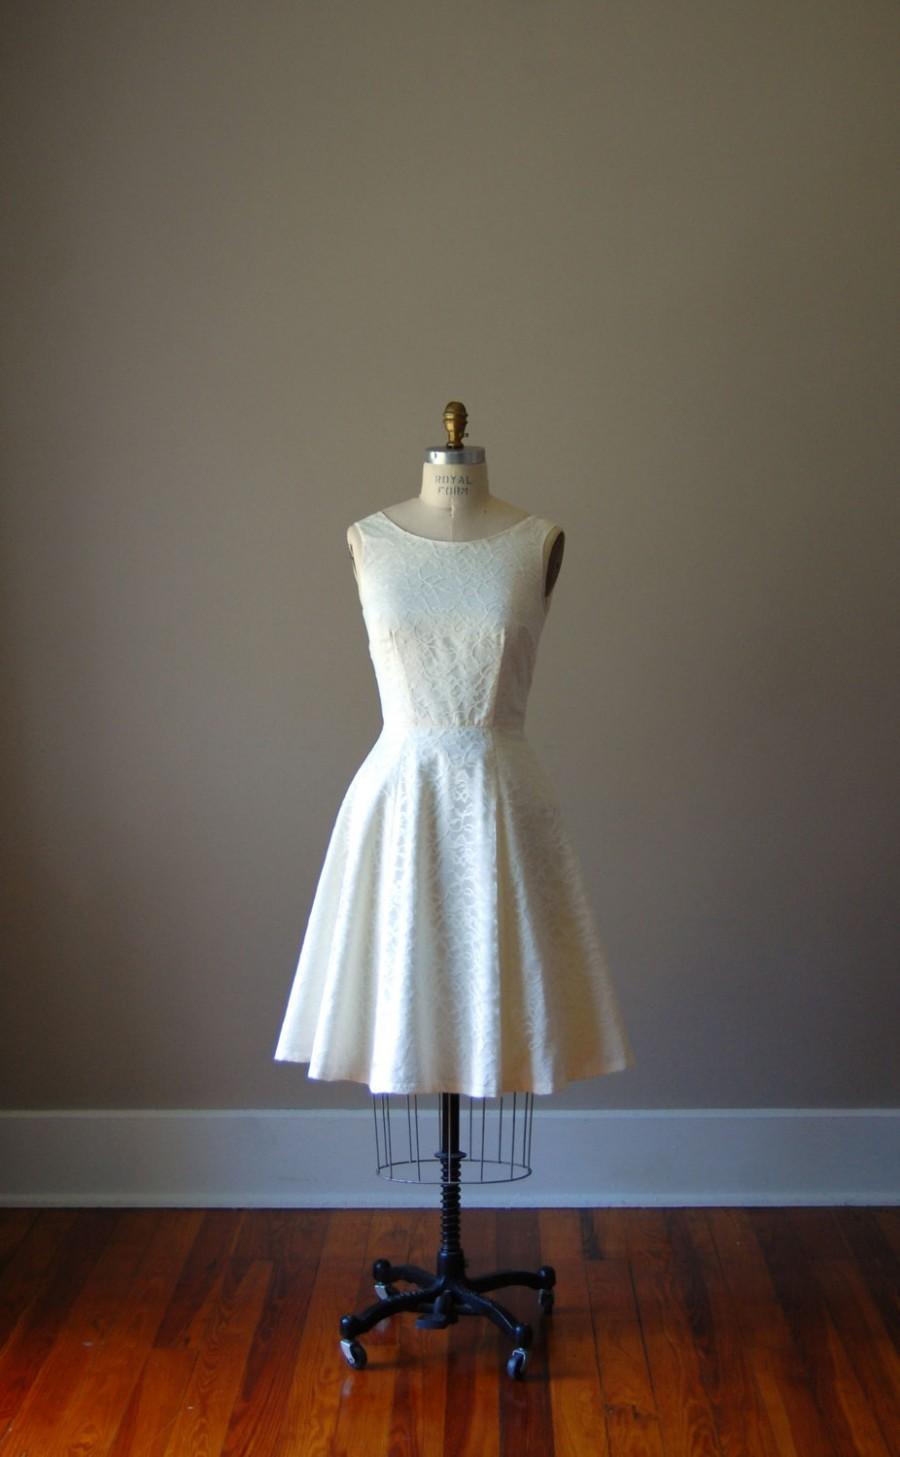 زفاف - Ivory Cotton and Lace Cocktail Dress with Scoop Neck and Full Skirt / Bridesmaid/ Wedding / Knee Length / Circle Skirt / Scoop Back / Cream